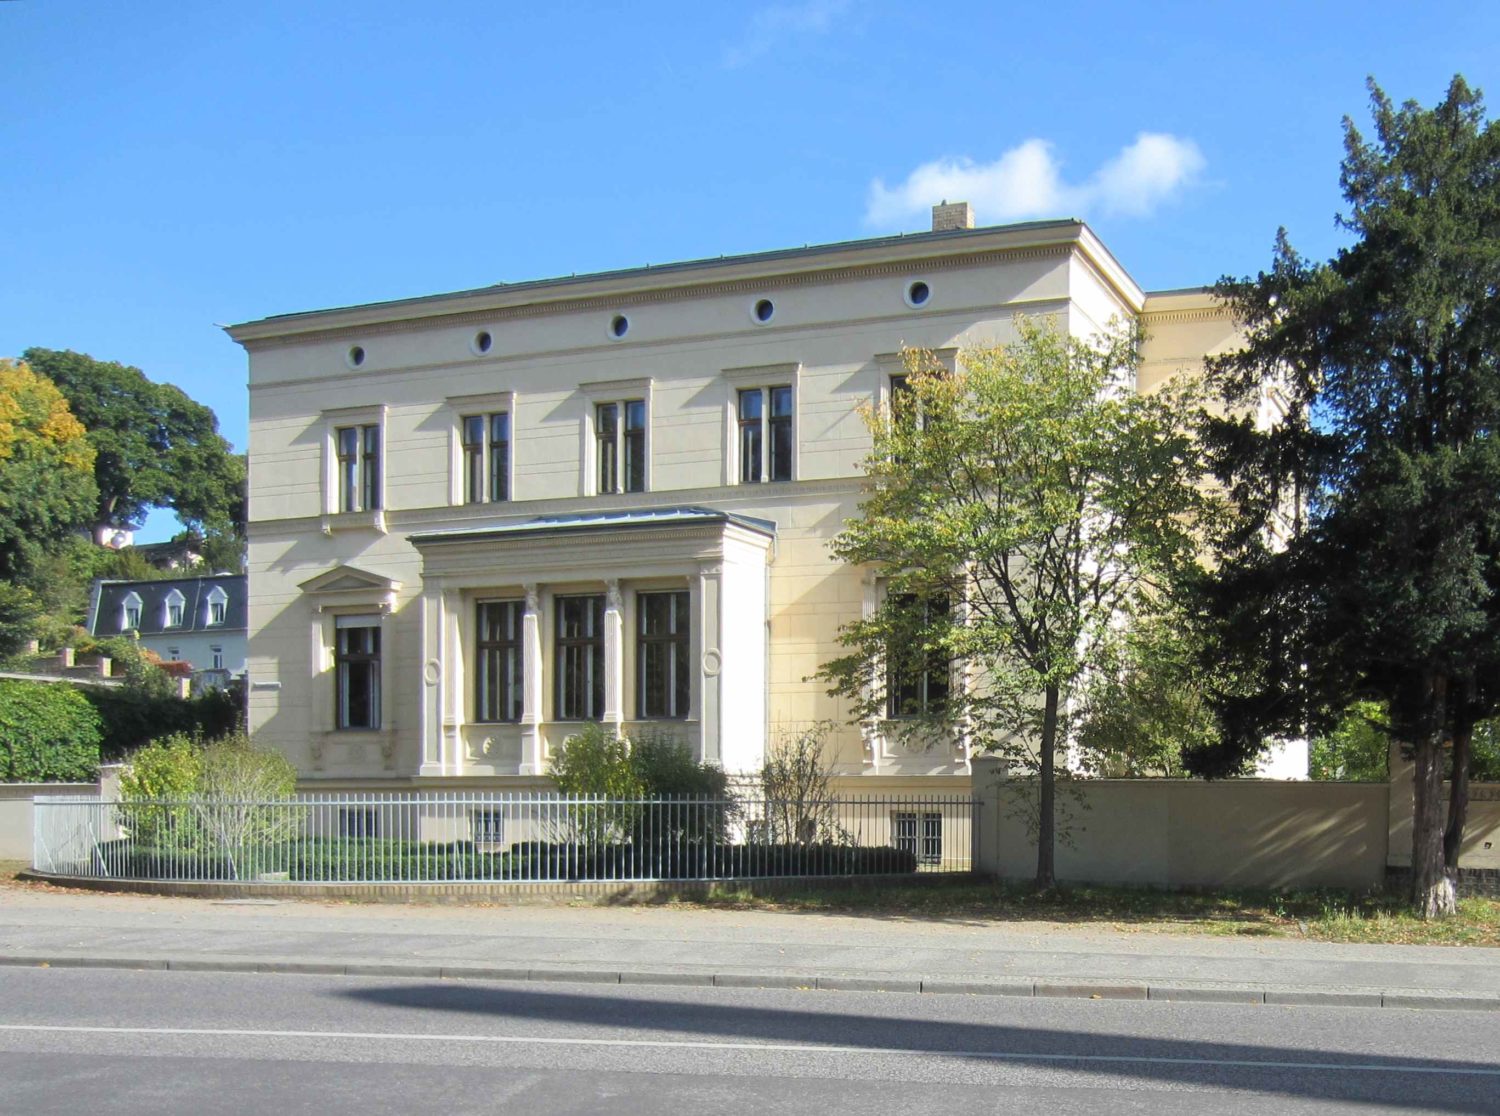 Tipps Potsdam In Potsdam reihen sich in der Weinberg- und der Mauerstraße denkmalgeschützte Villen und Wohnhäuser aneinander.